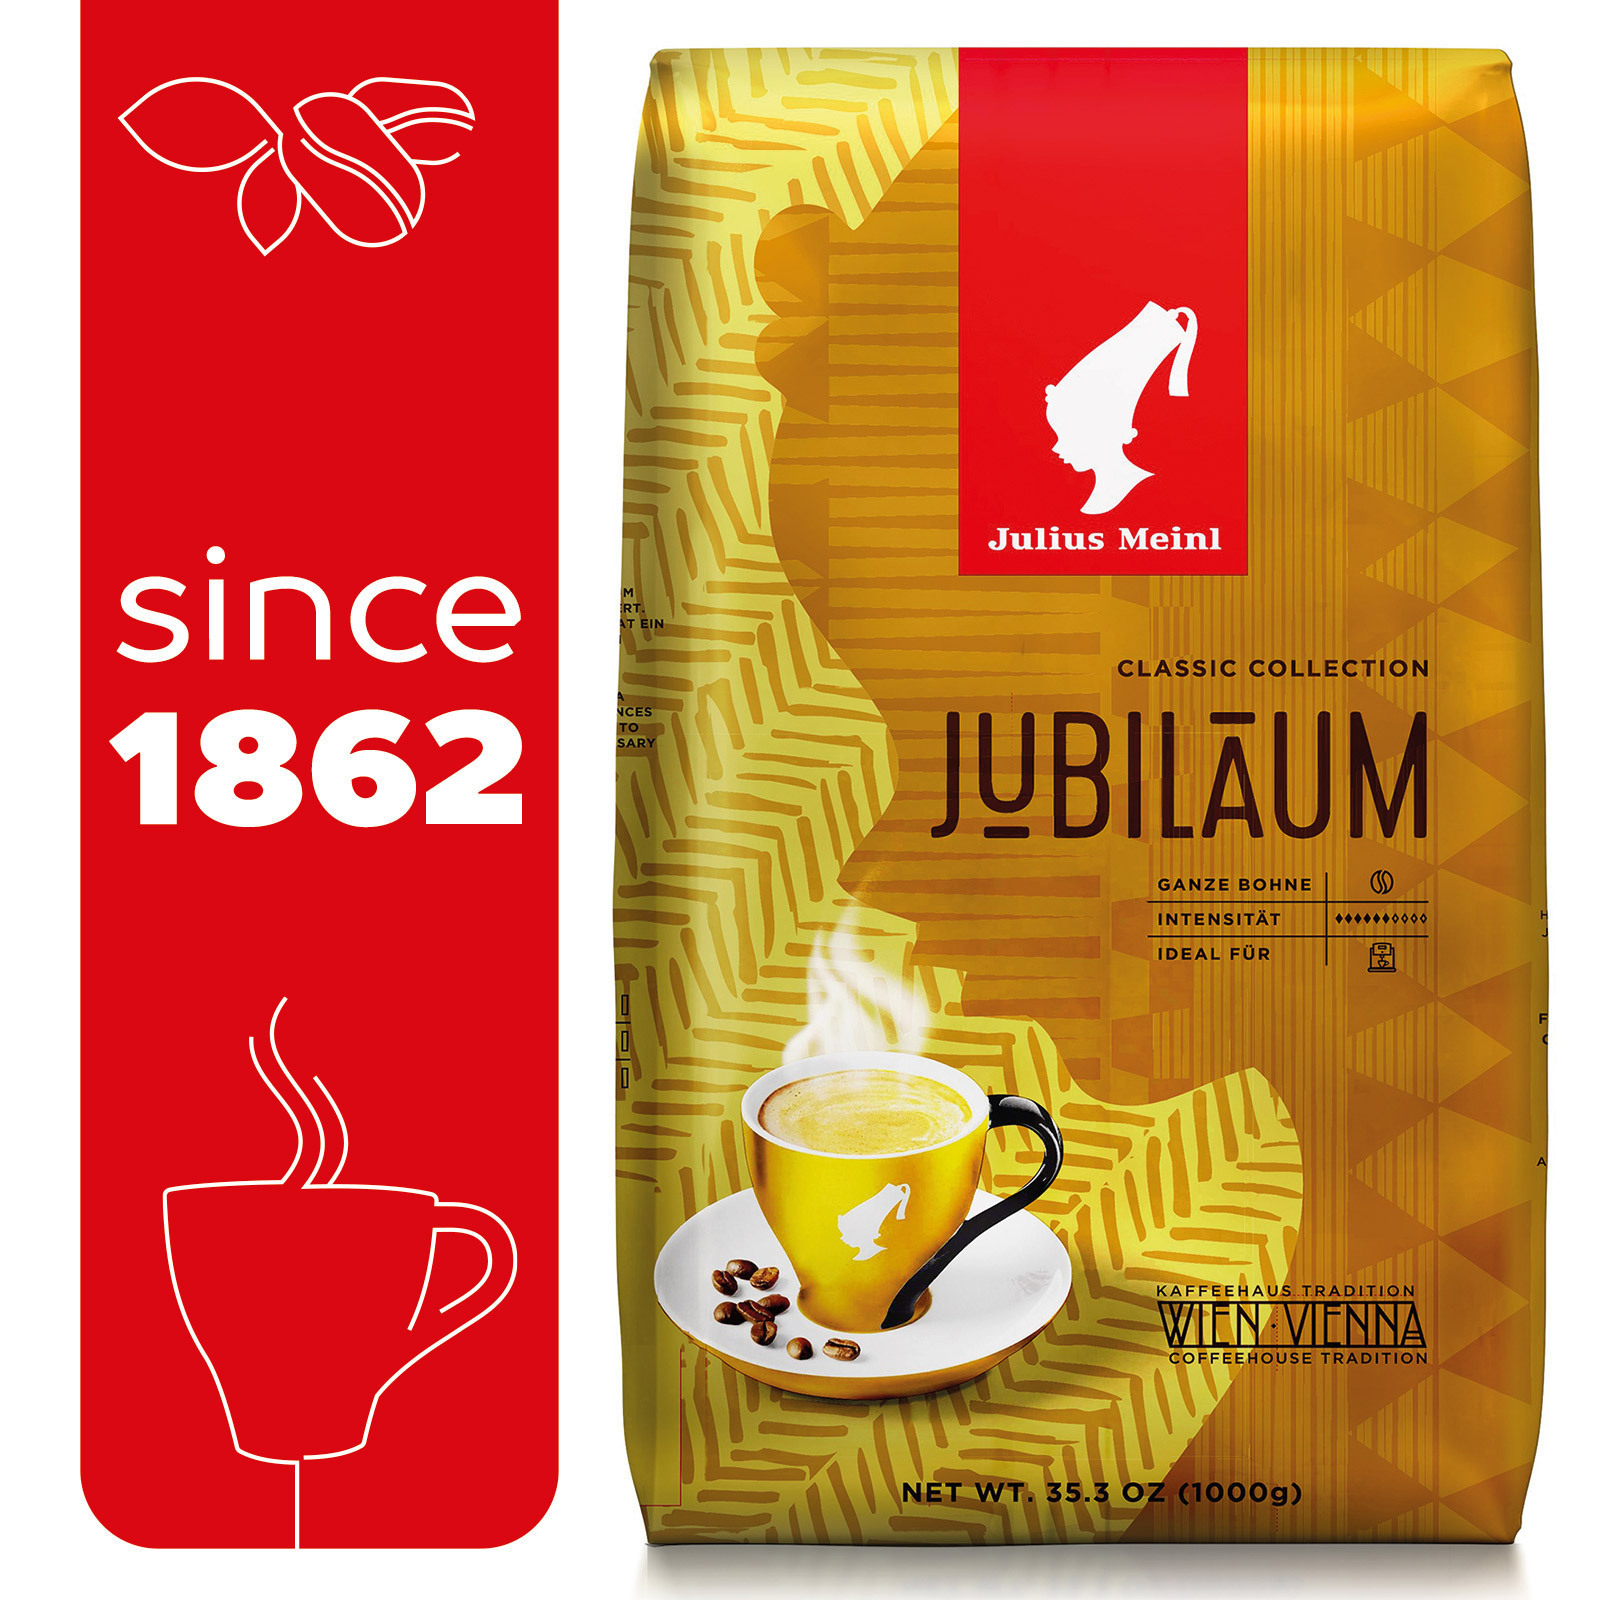 Кофе julius meinl в зернах 1 кг